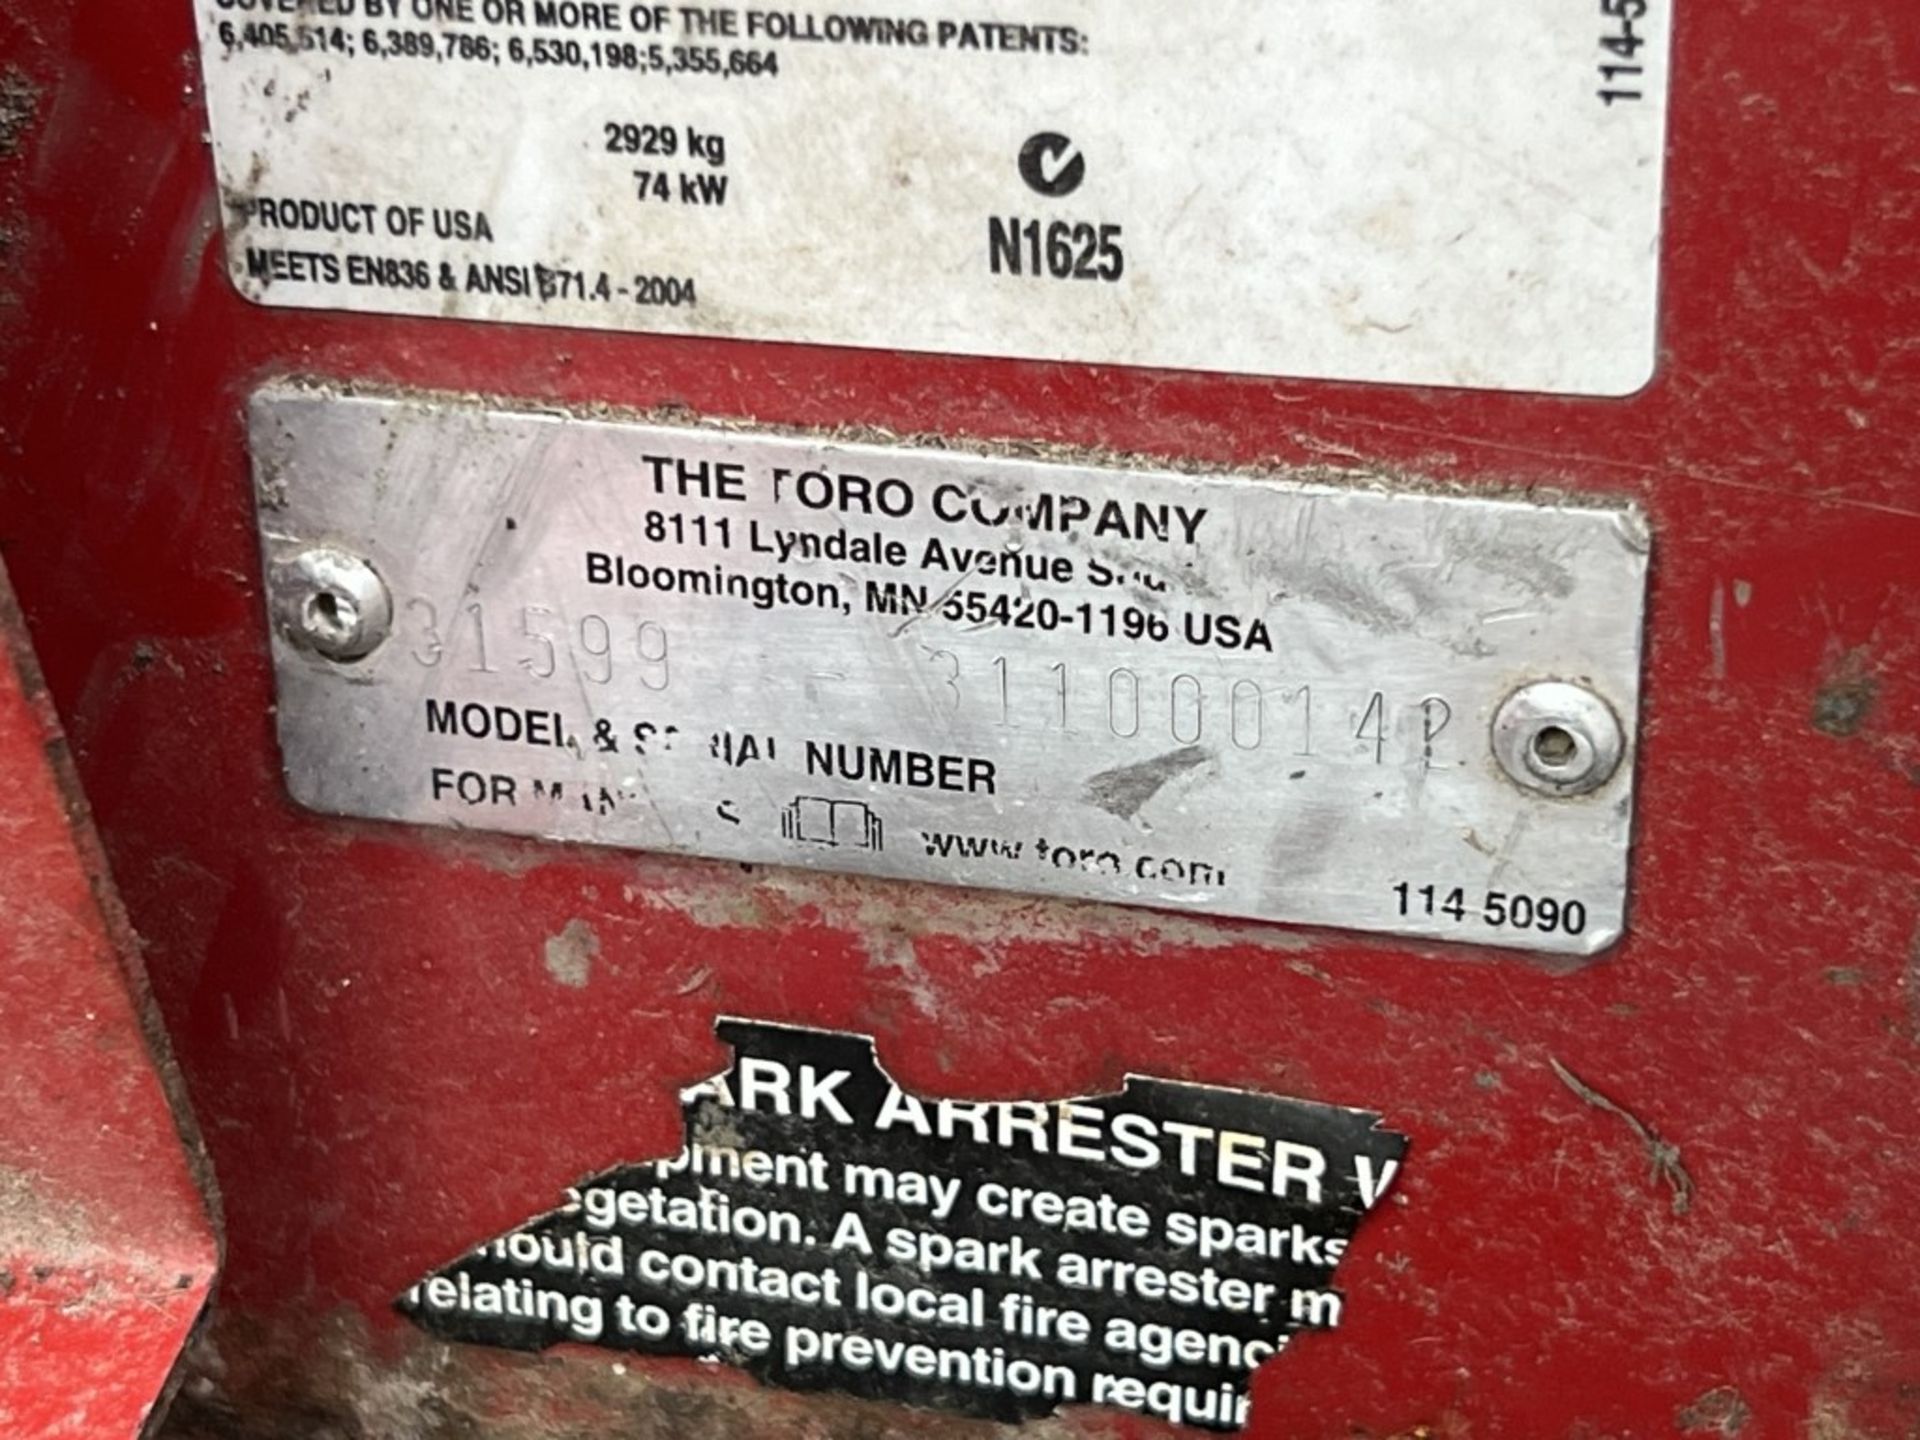 2011 Toro Groundsmaster 5910 Mower - Image 13 of 28